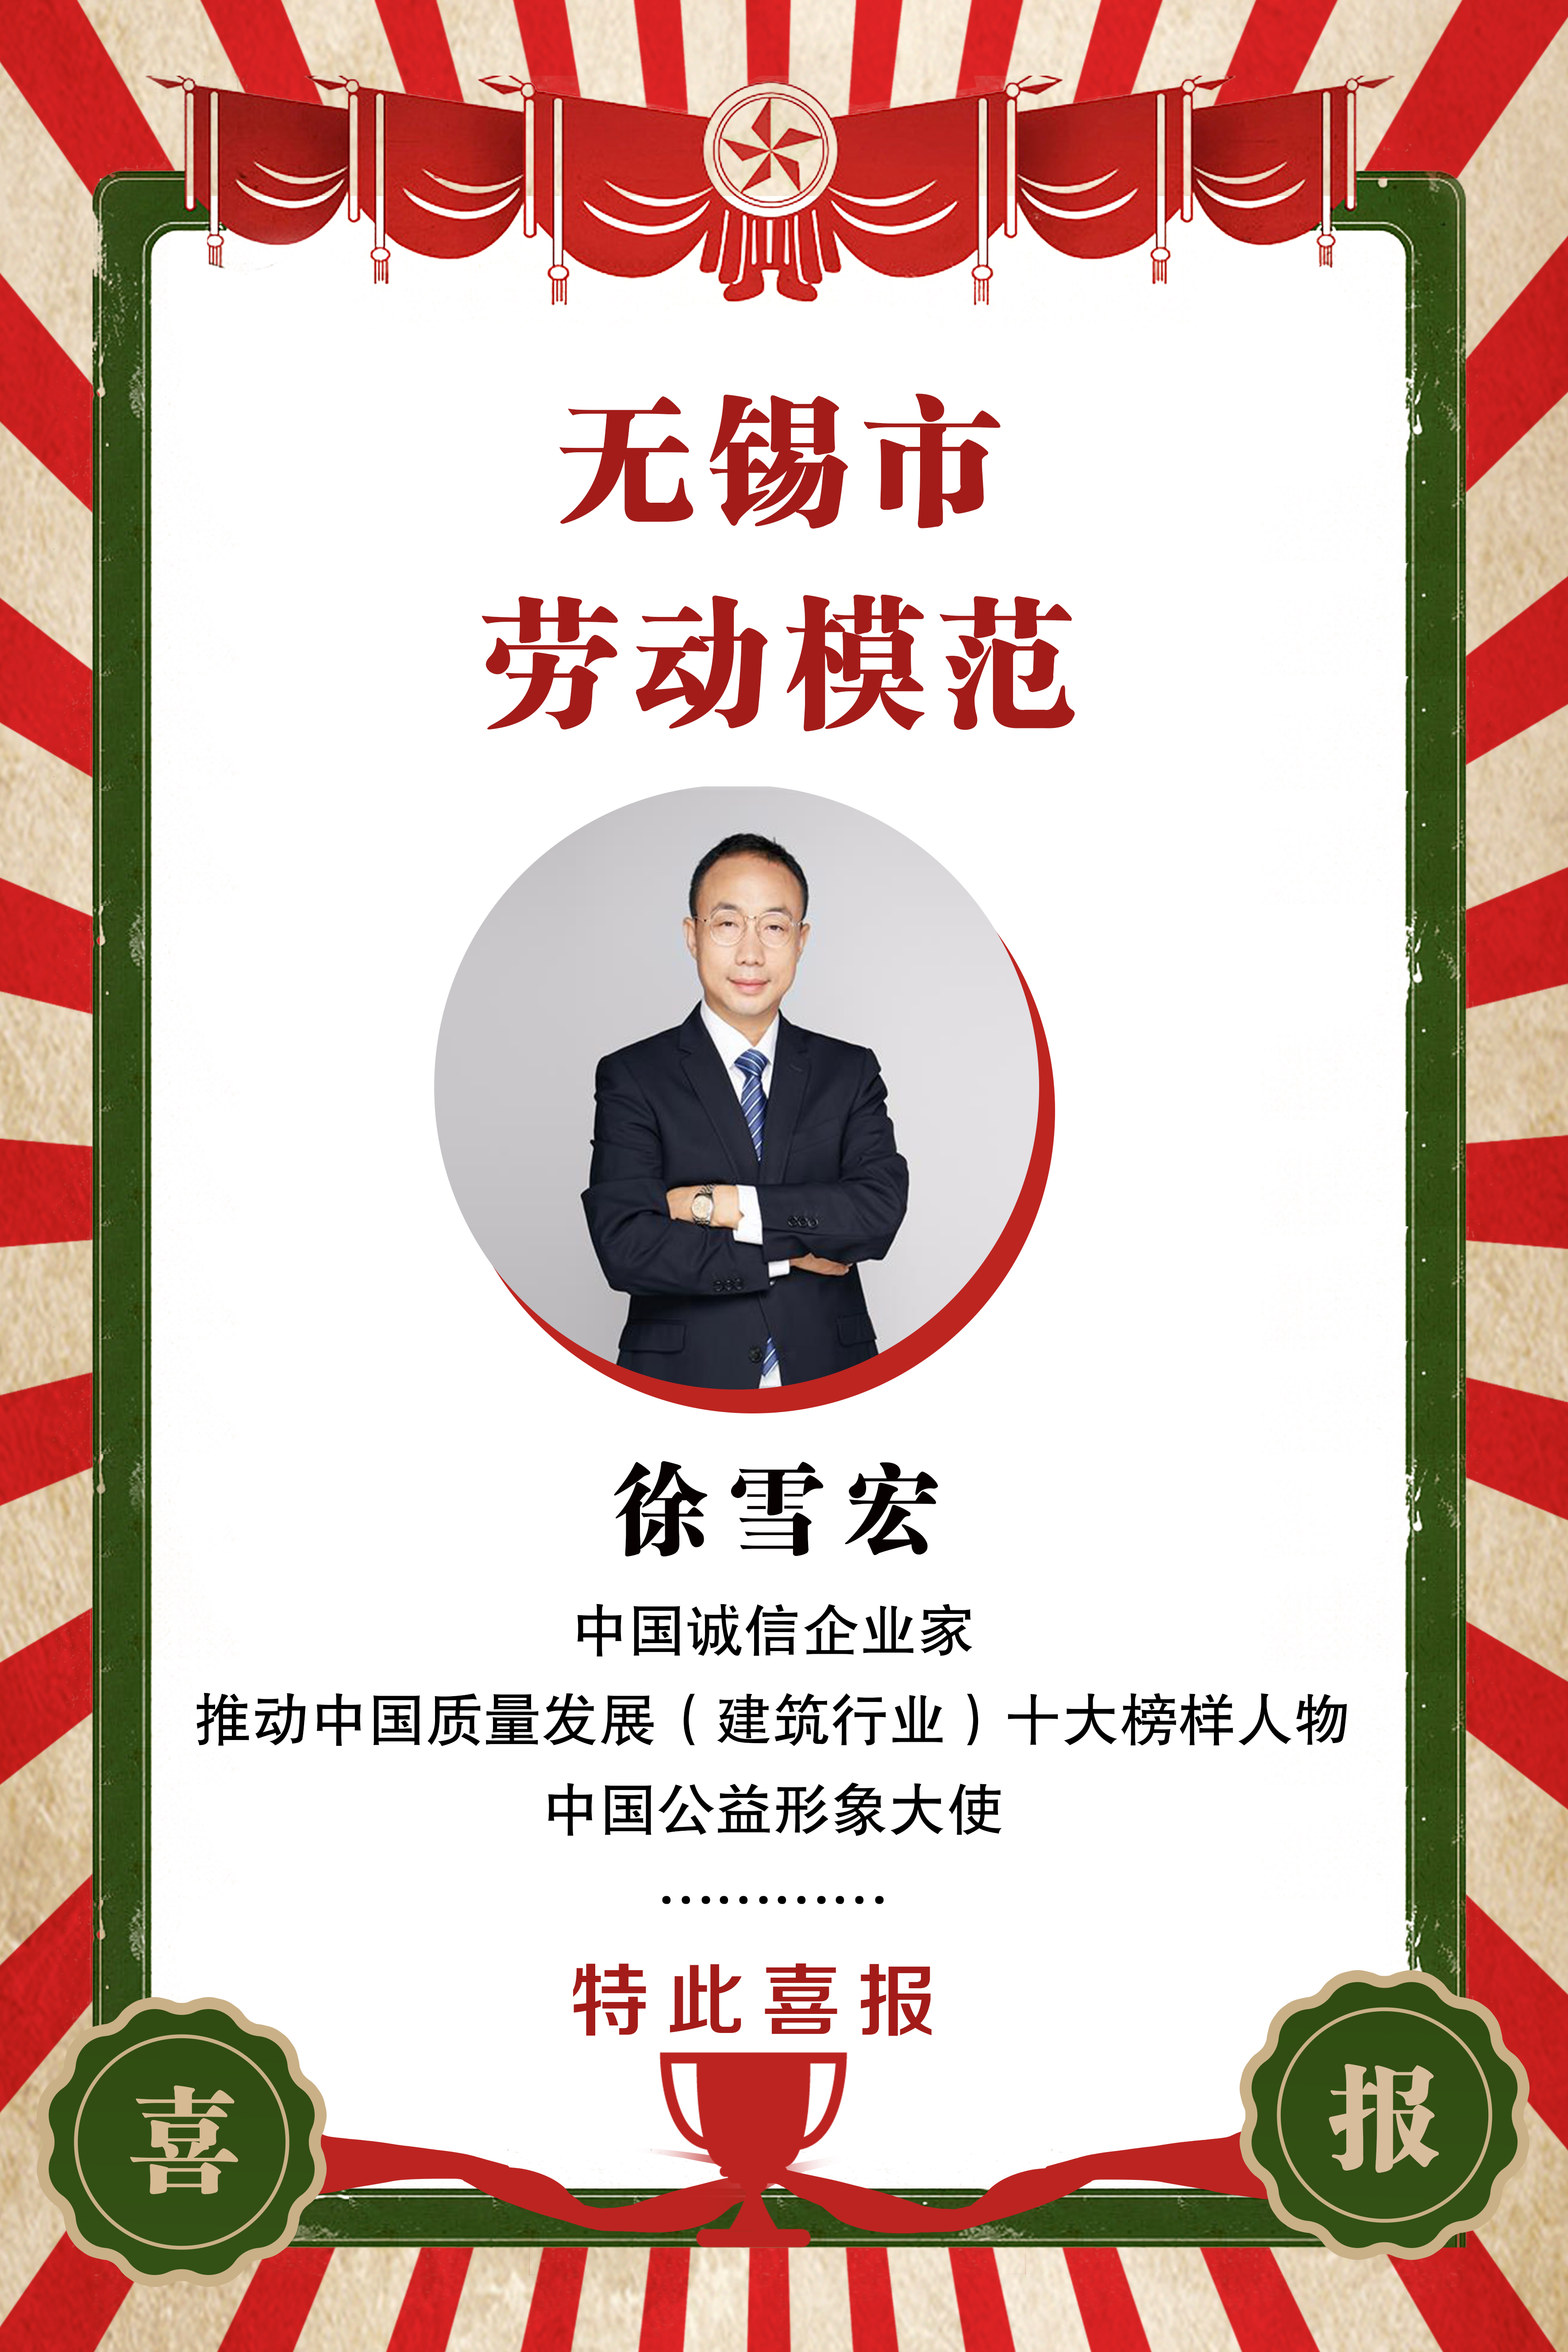 热烈祝贺江苏新利体育董事长徐雪宏被授予“无锡市劳动模范”光荣称号